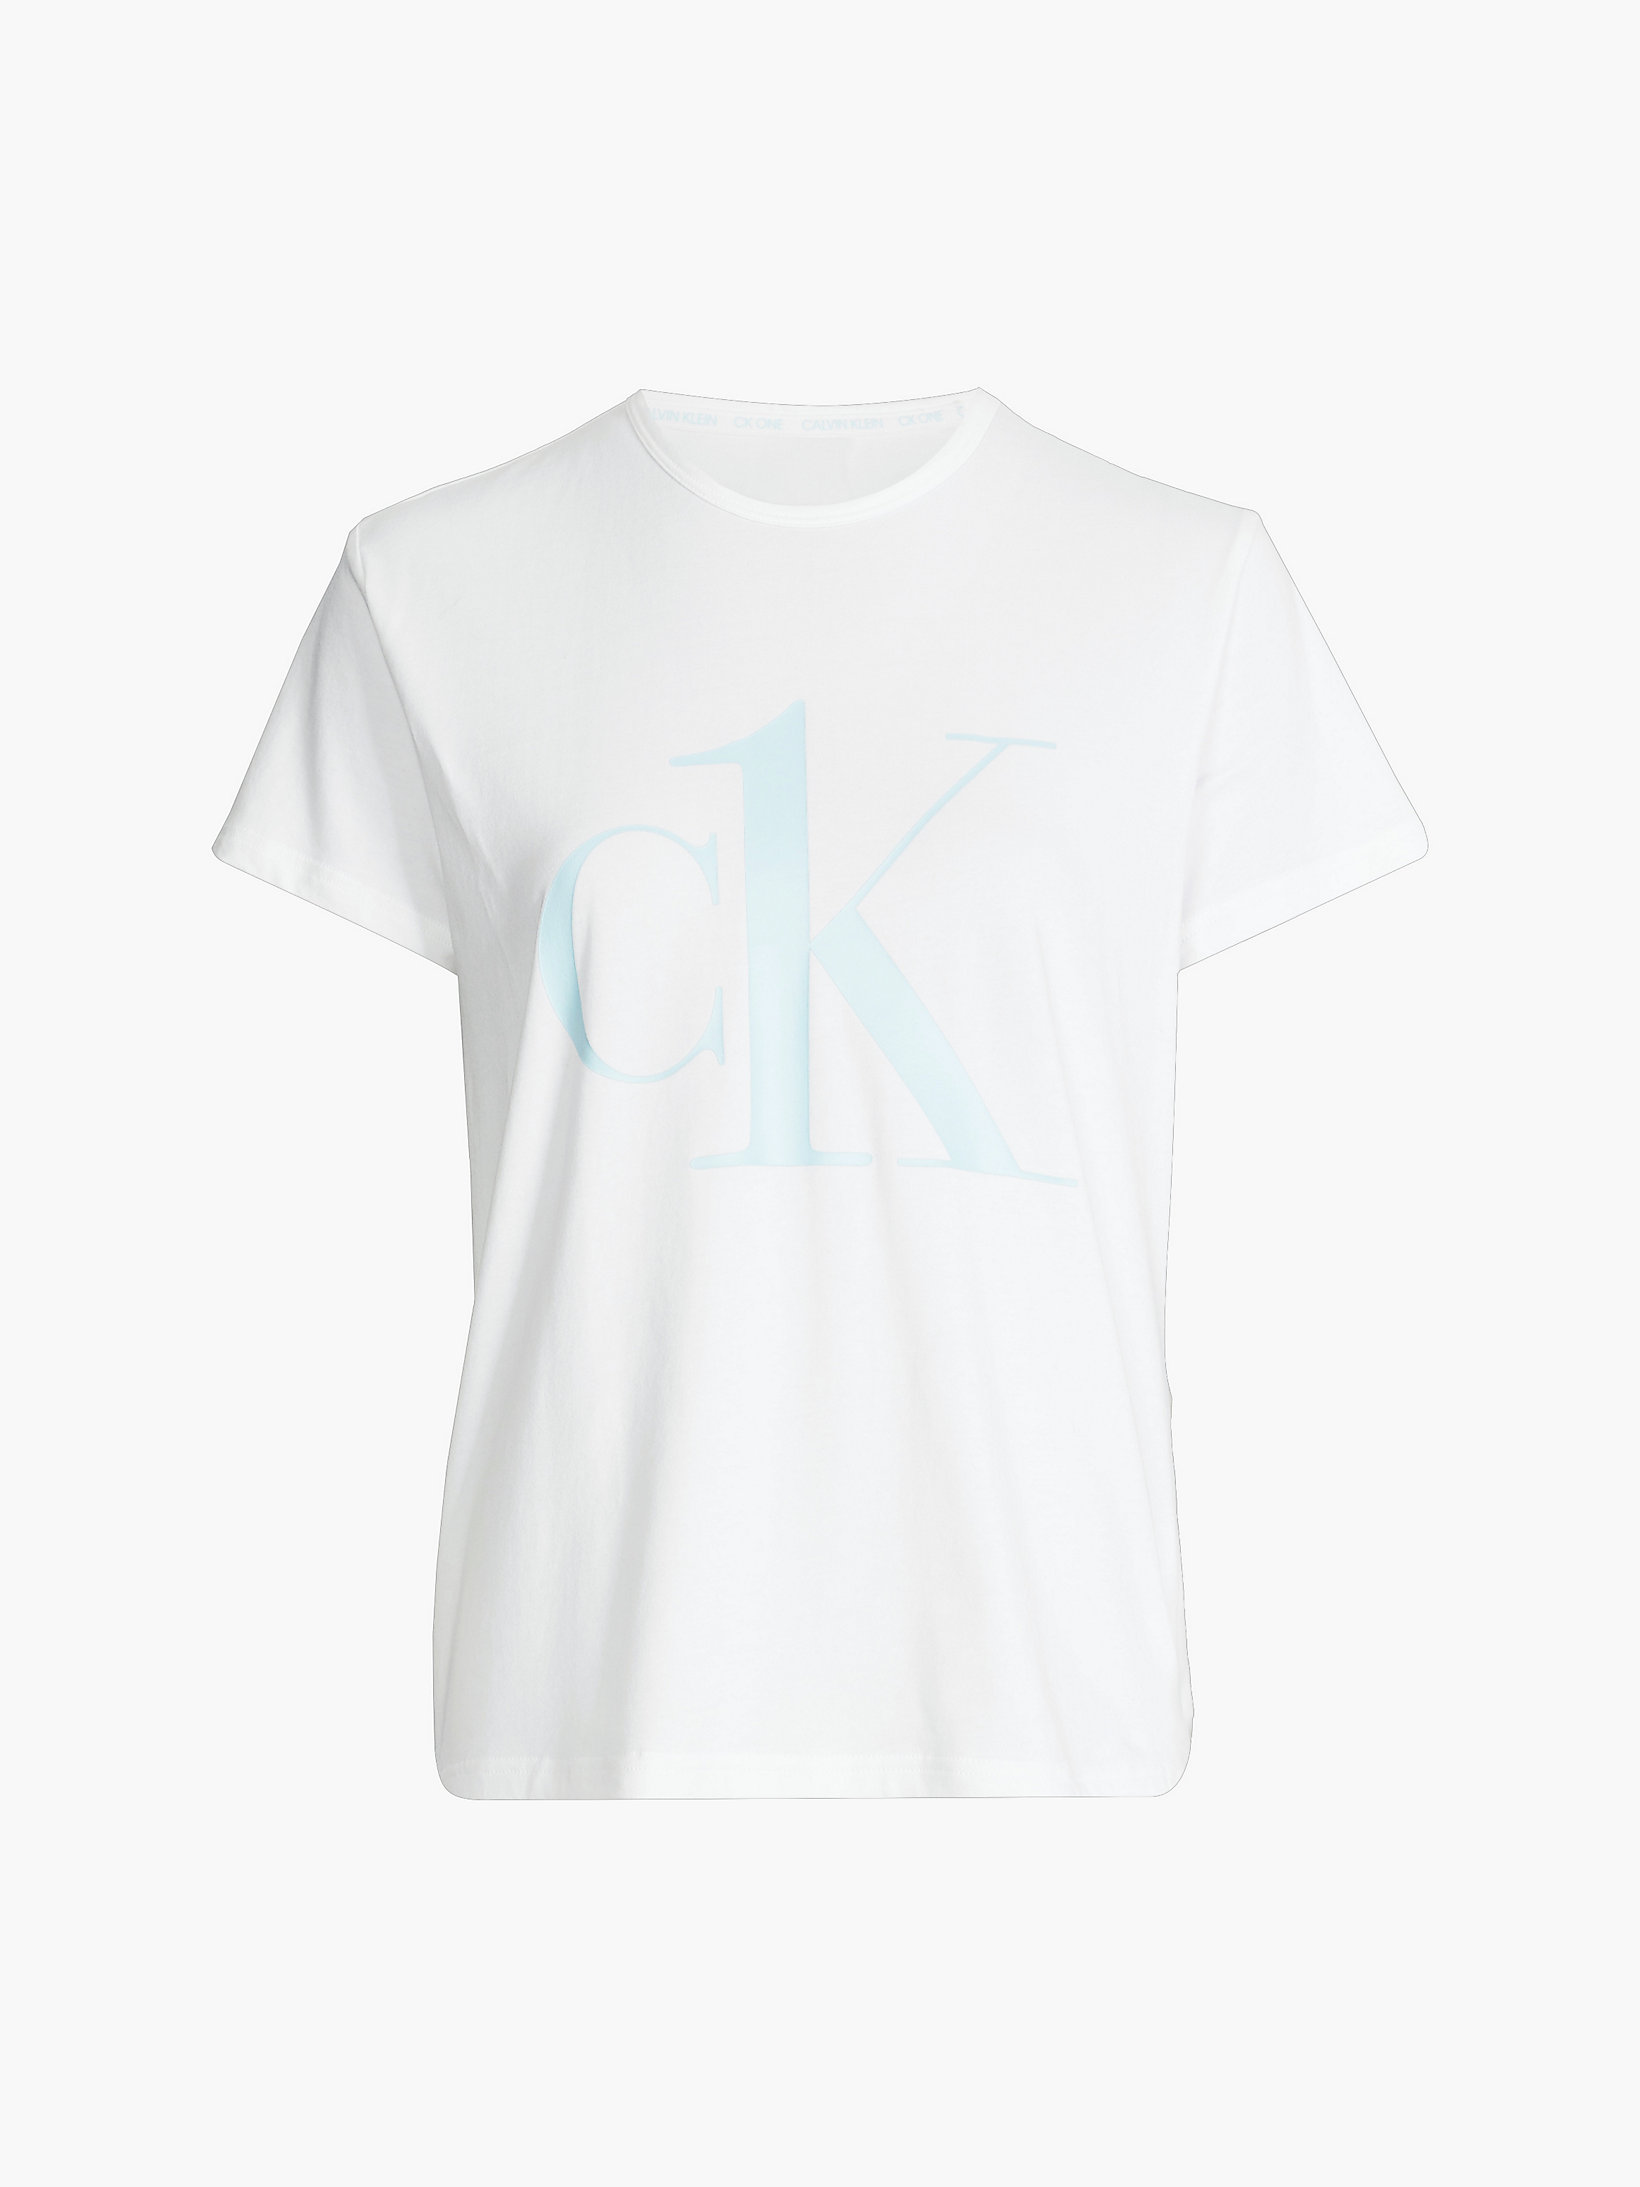 White W/ Palest Blue Logo Pyjama Top - CK One undefined women Calvin Klein